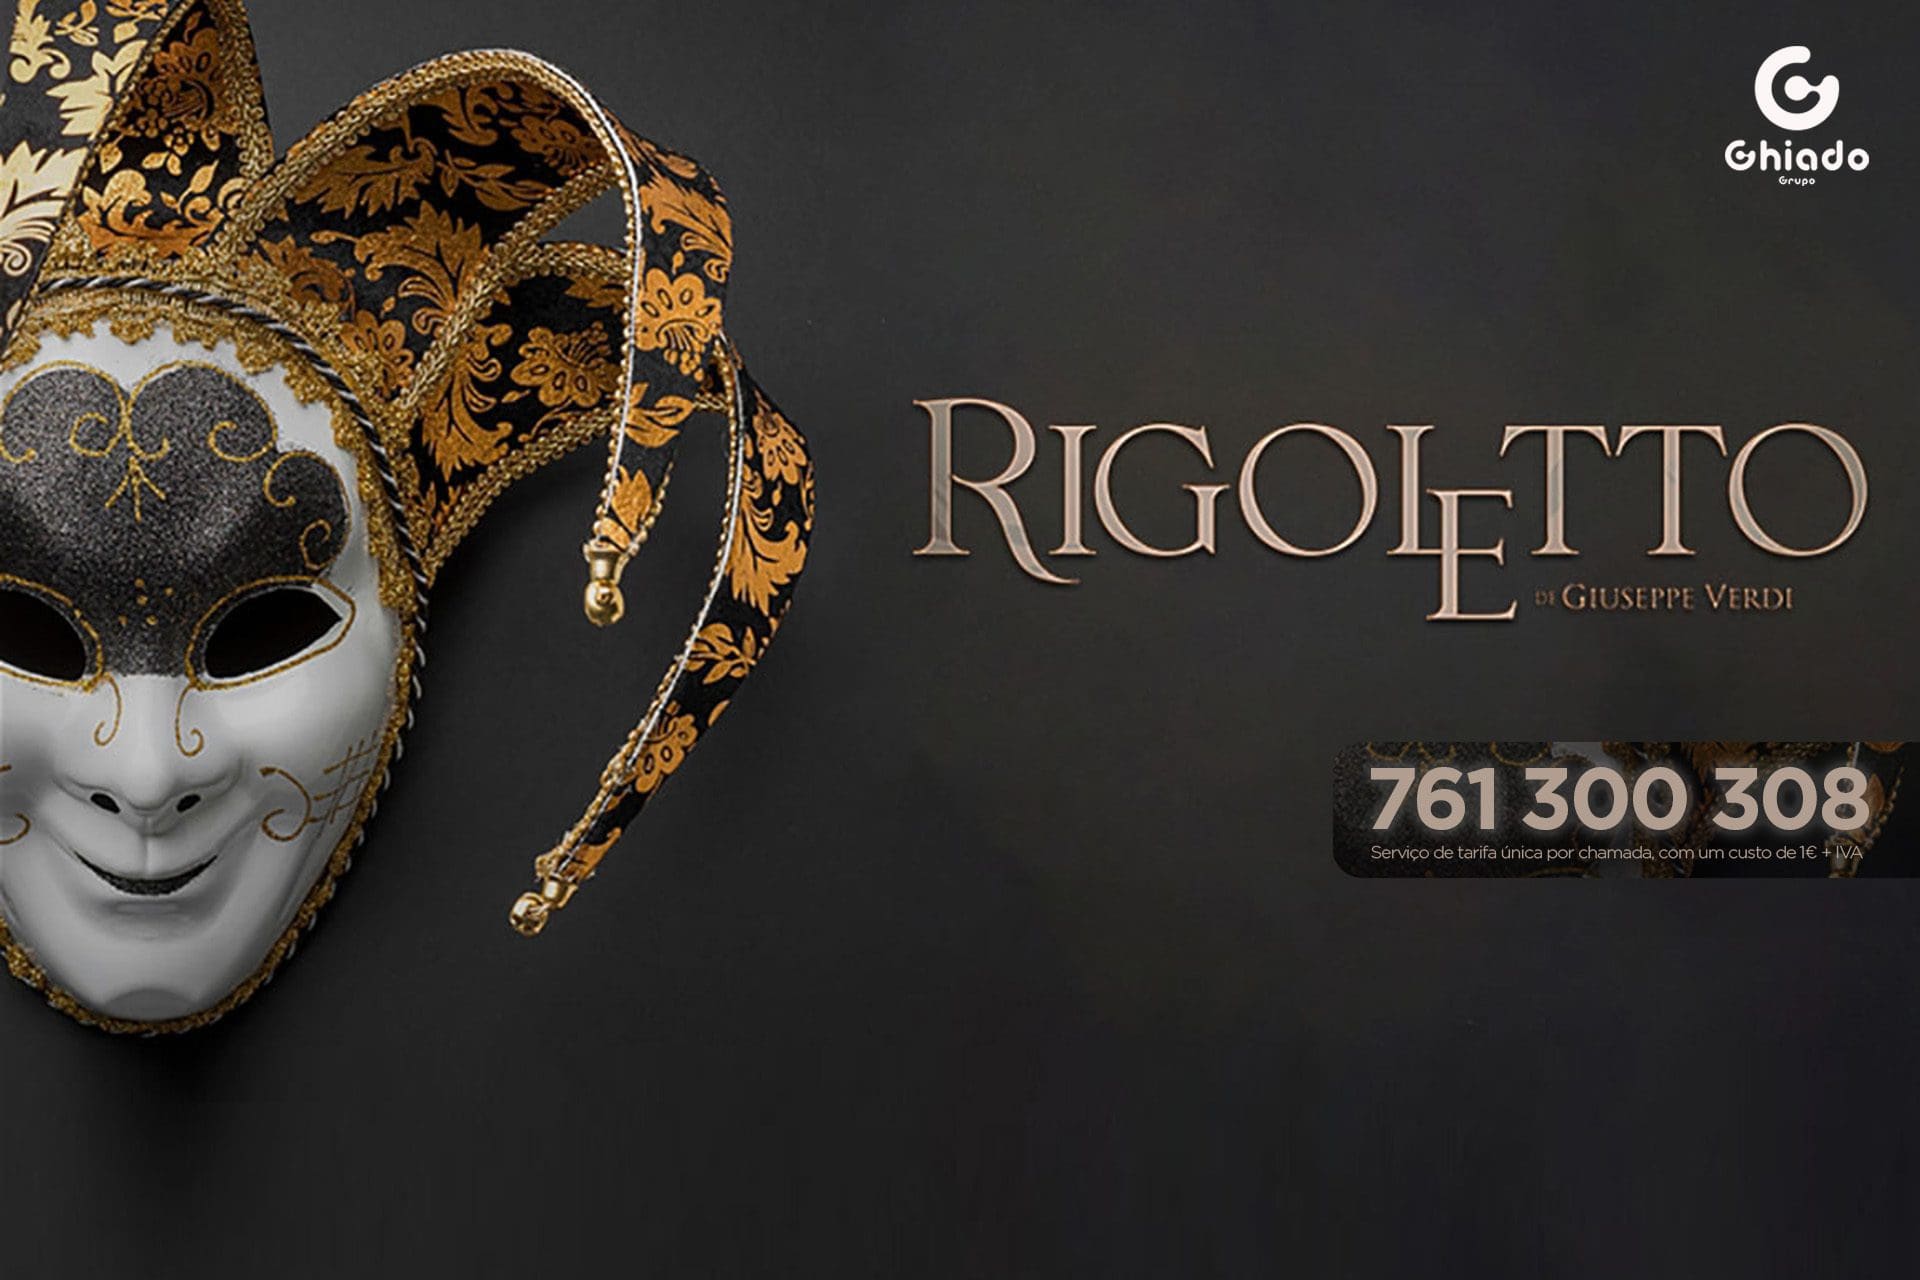 Habilite-se a ganhar bilhetes para a ópera Rigoletto